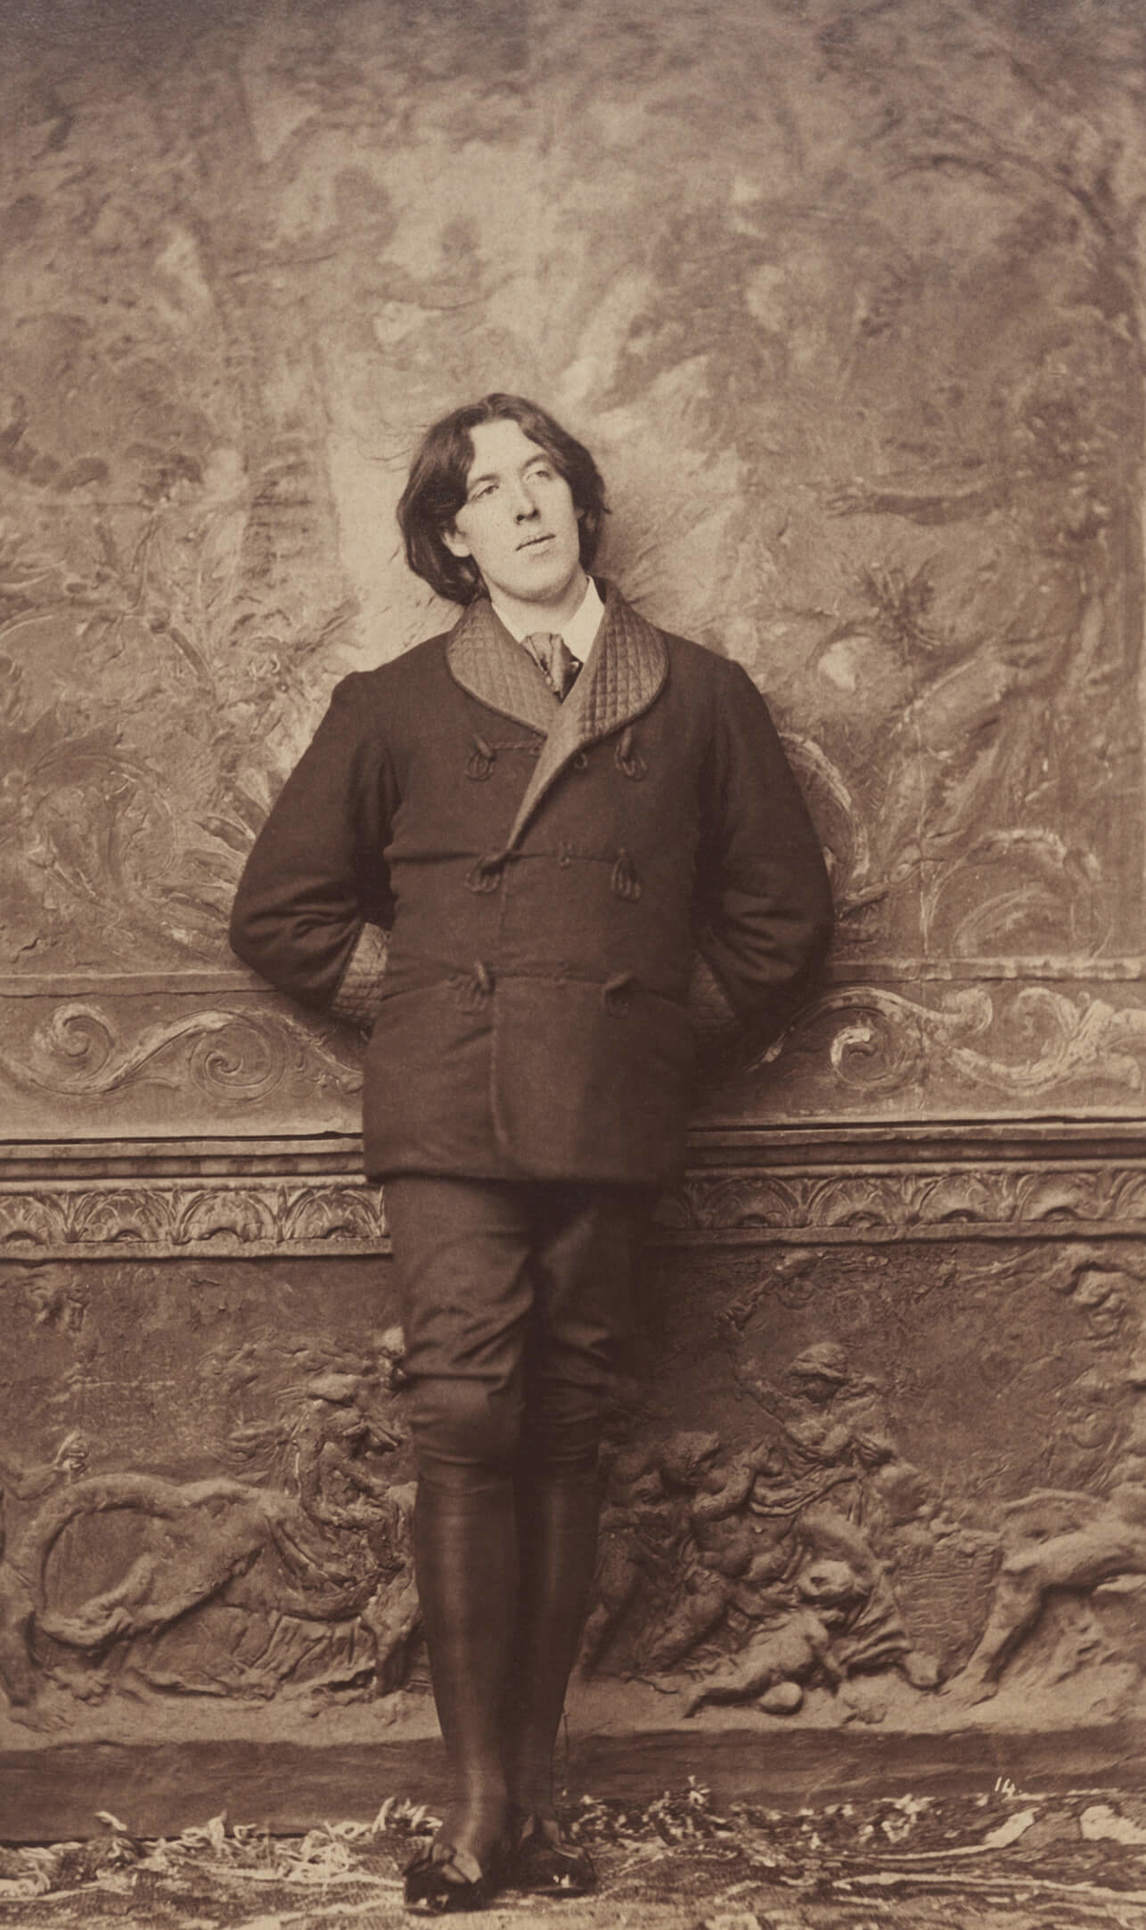 Napoleon Sarony, Oscar Wilde (Oscar Wilde), 1882